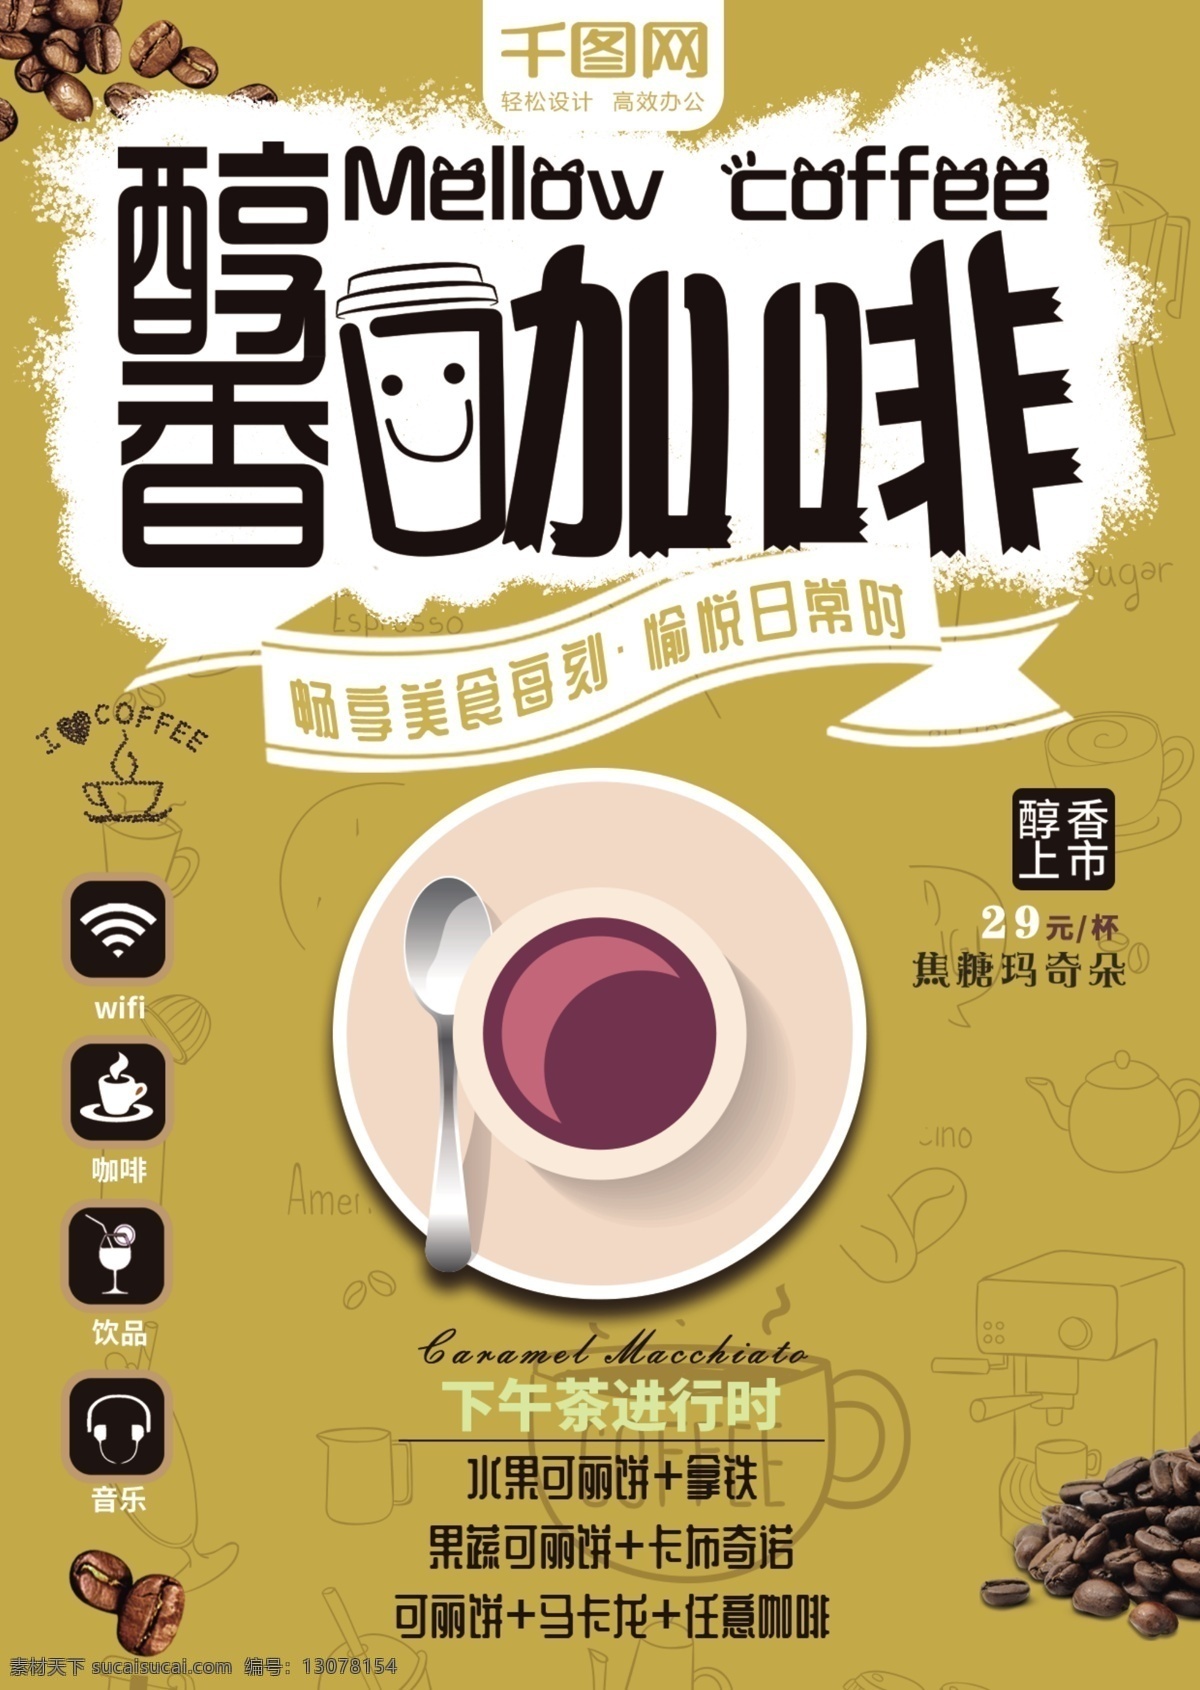 卡通 醇香 咖啡 促销 dm 单 奶茶 菜单 dm单 醇香咖啡